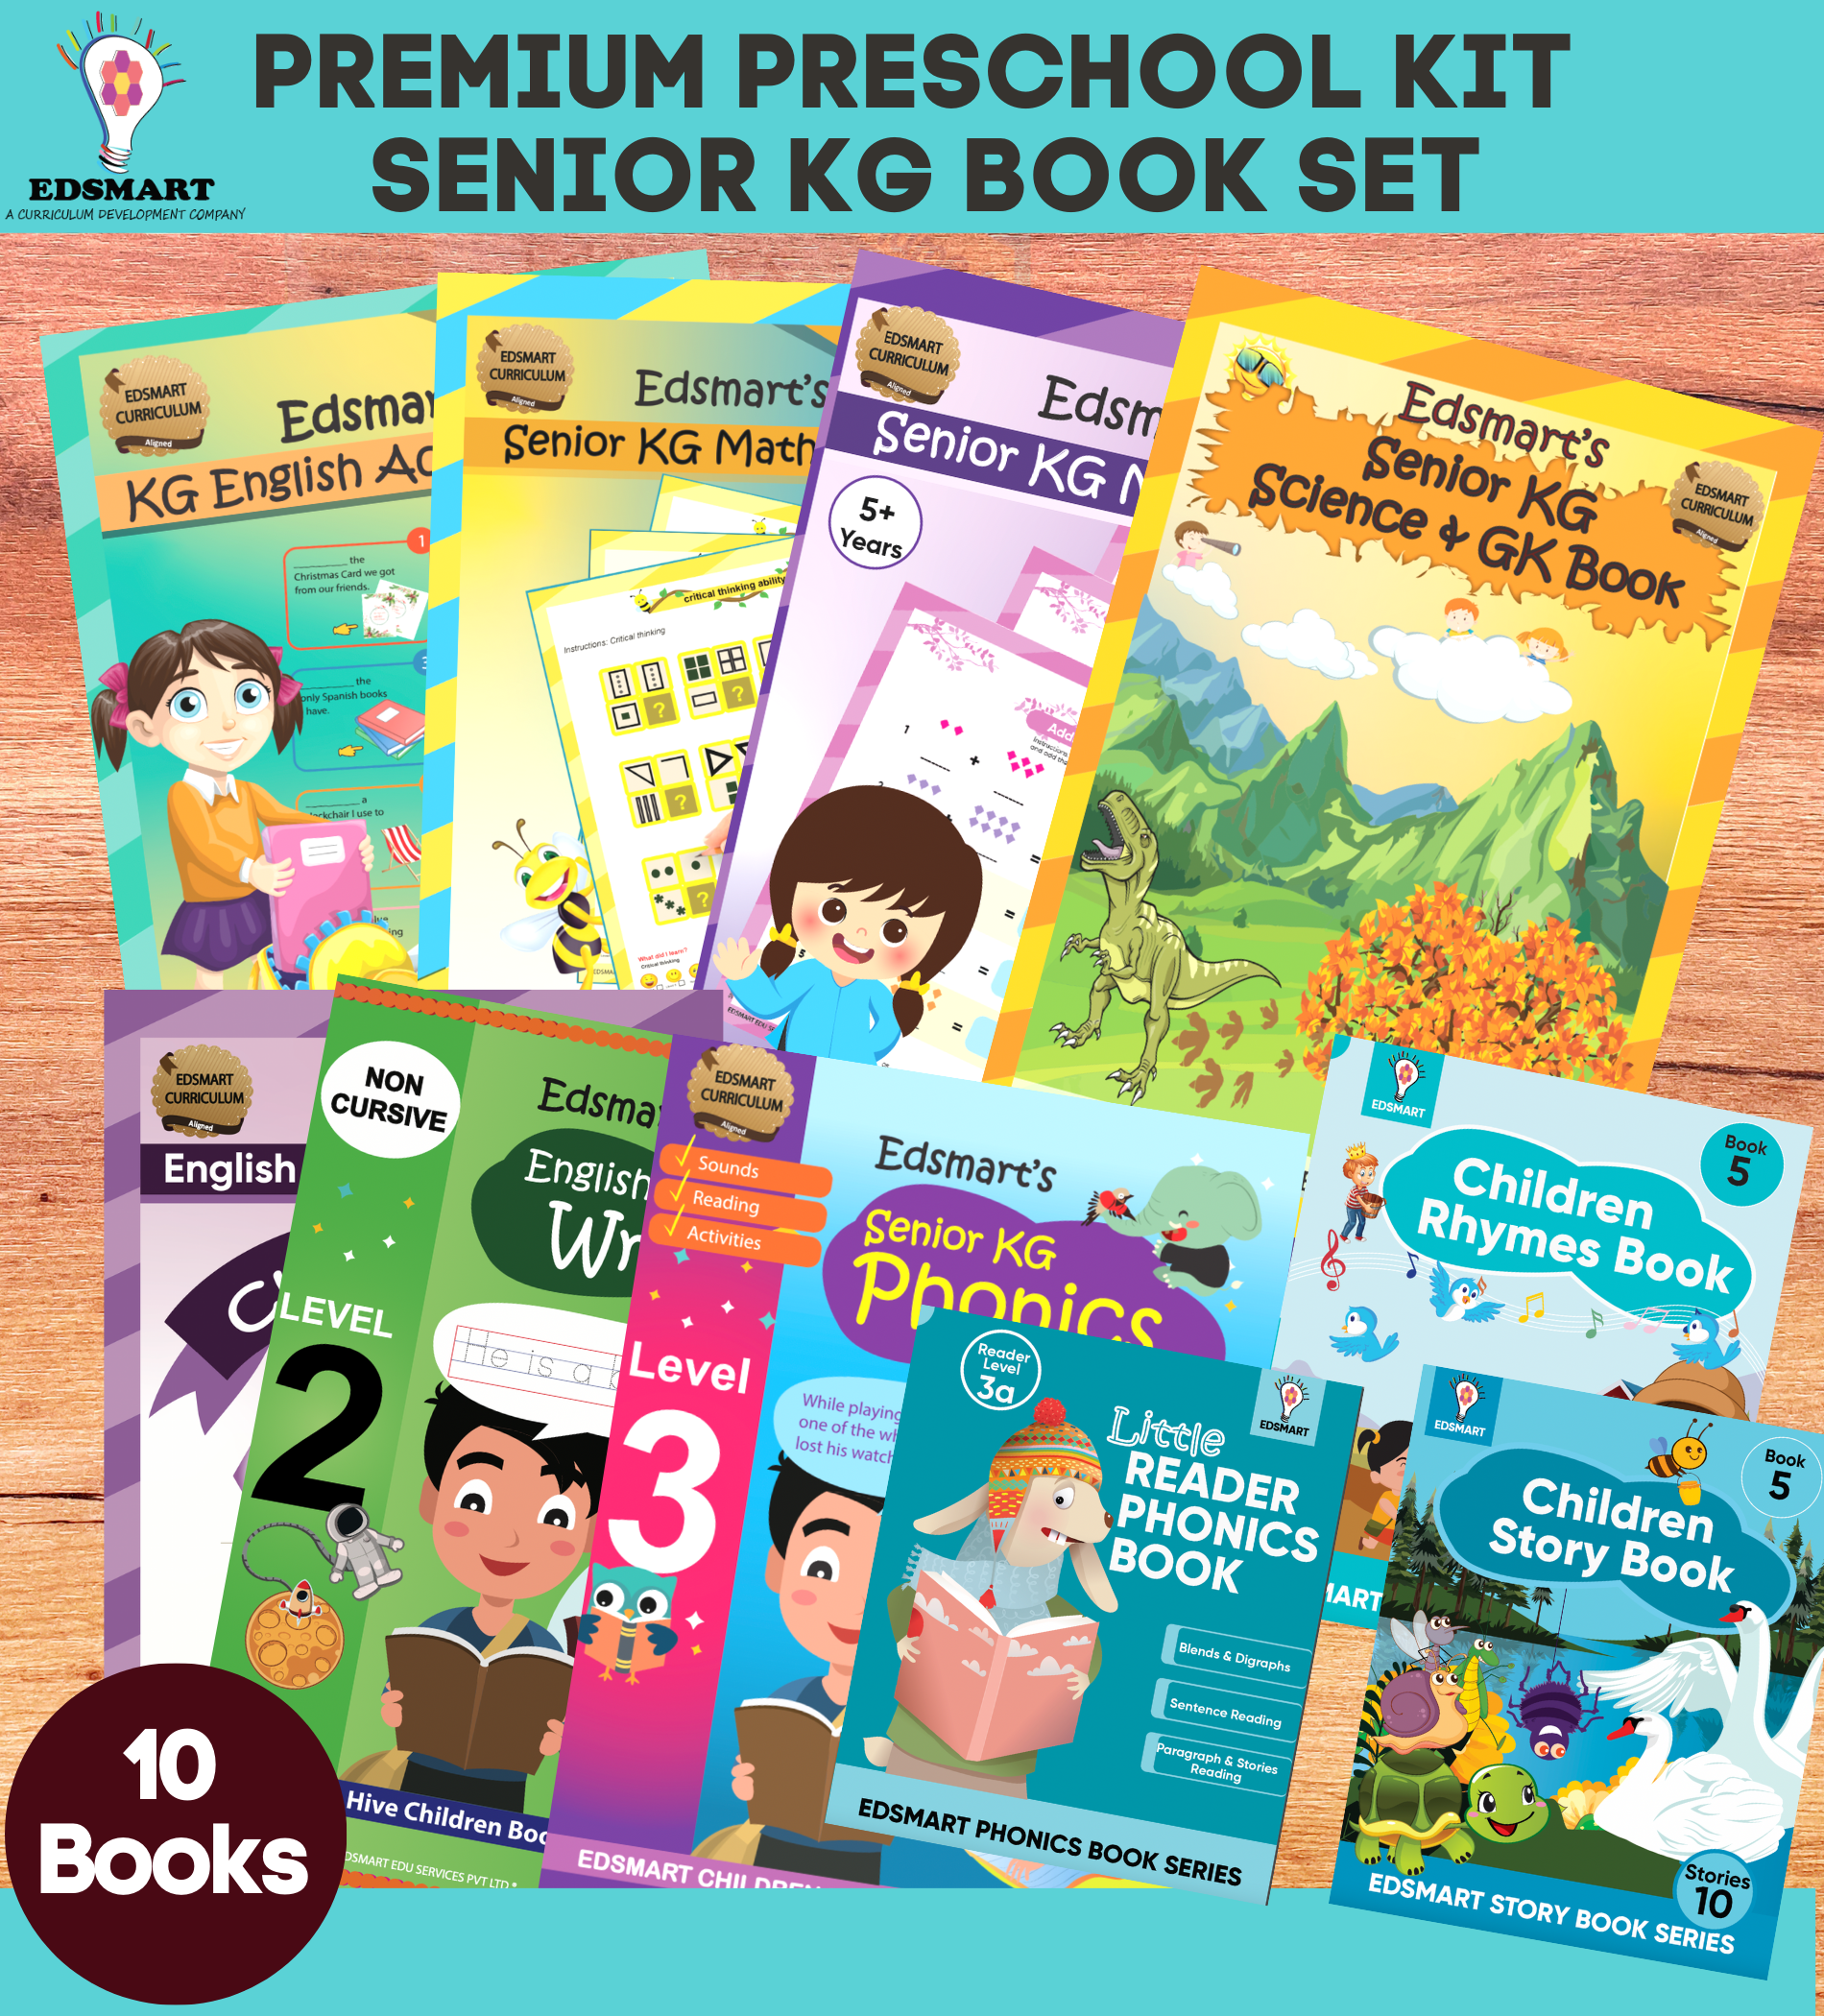 Edsmart Senior KG /UKG Preschool Books and Kit 